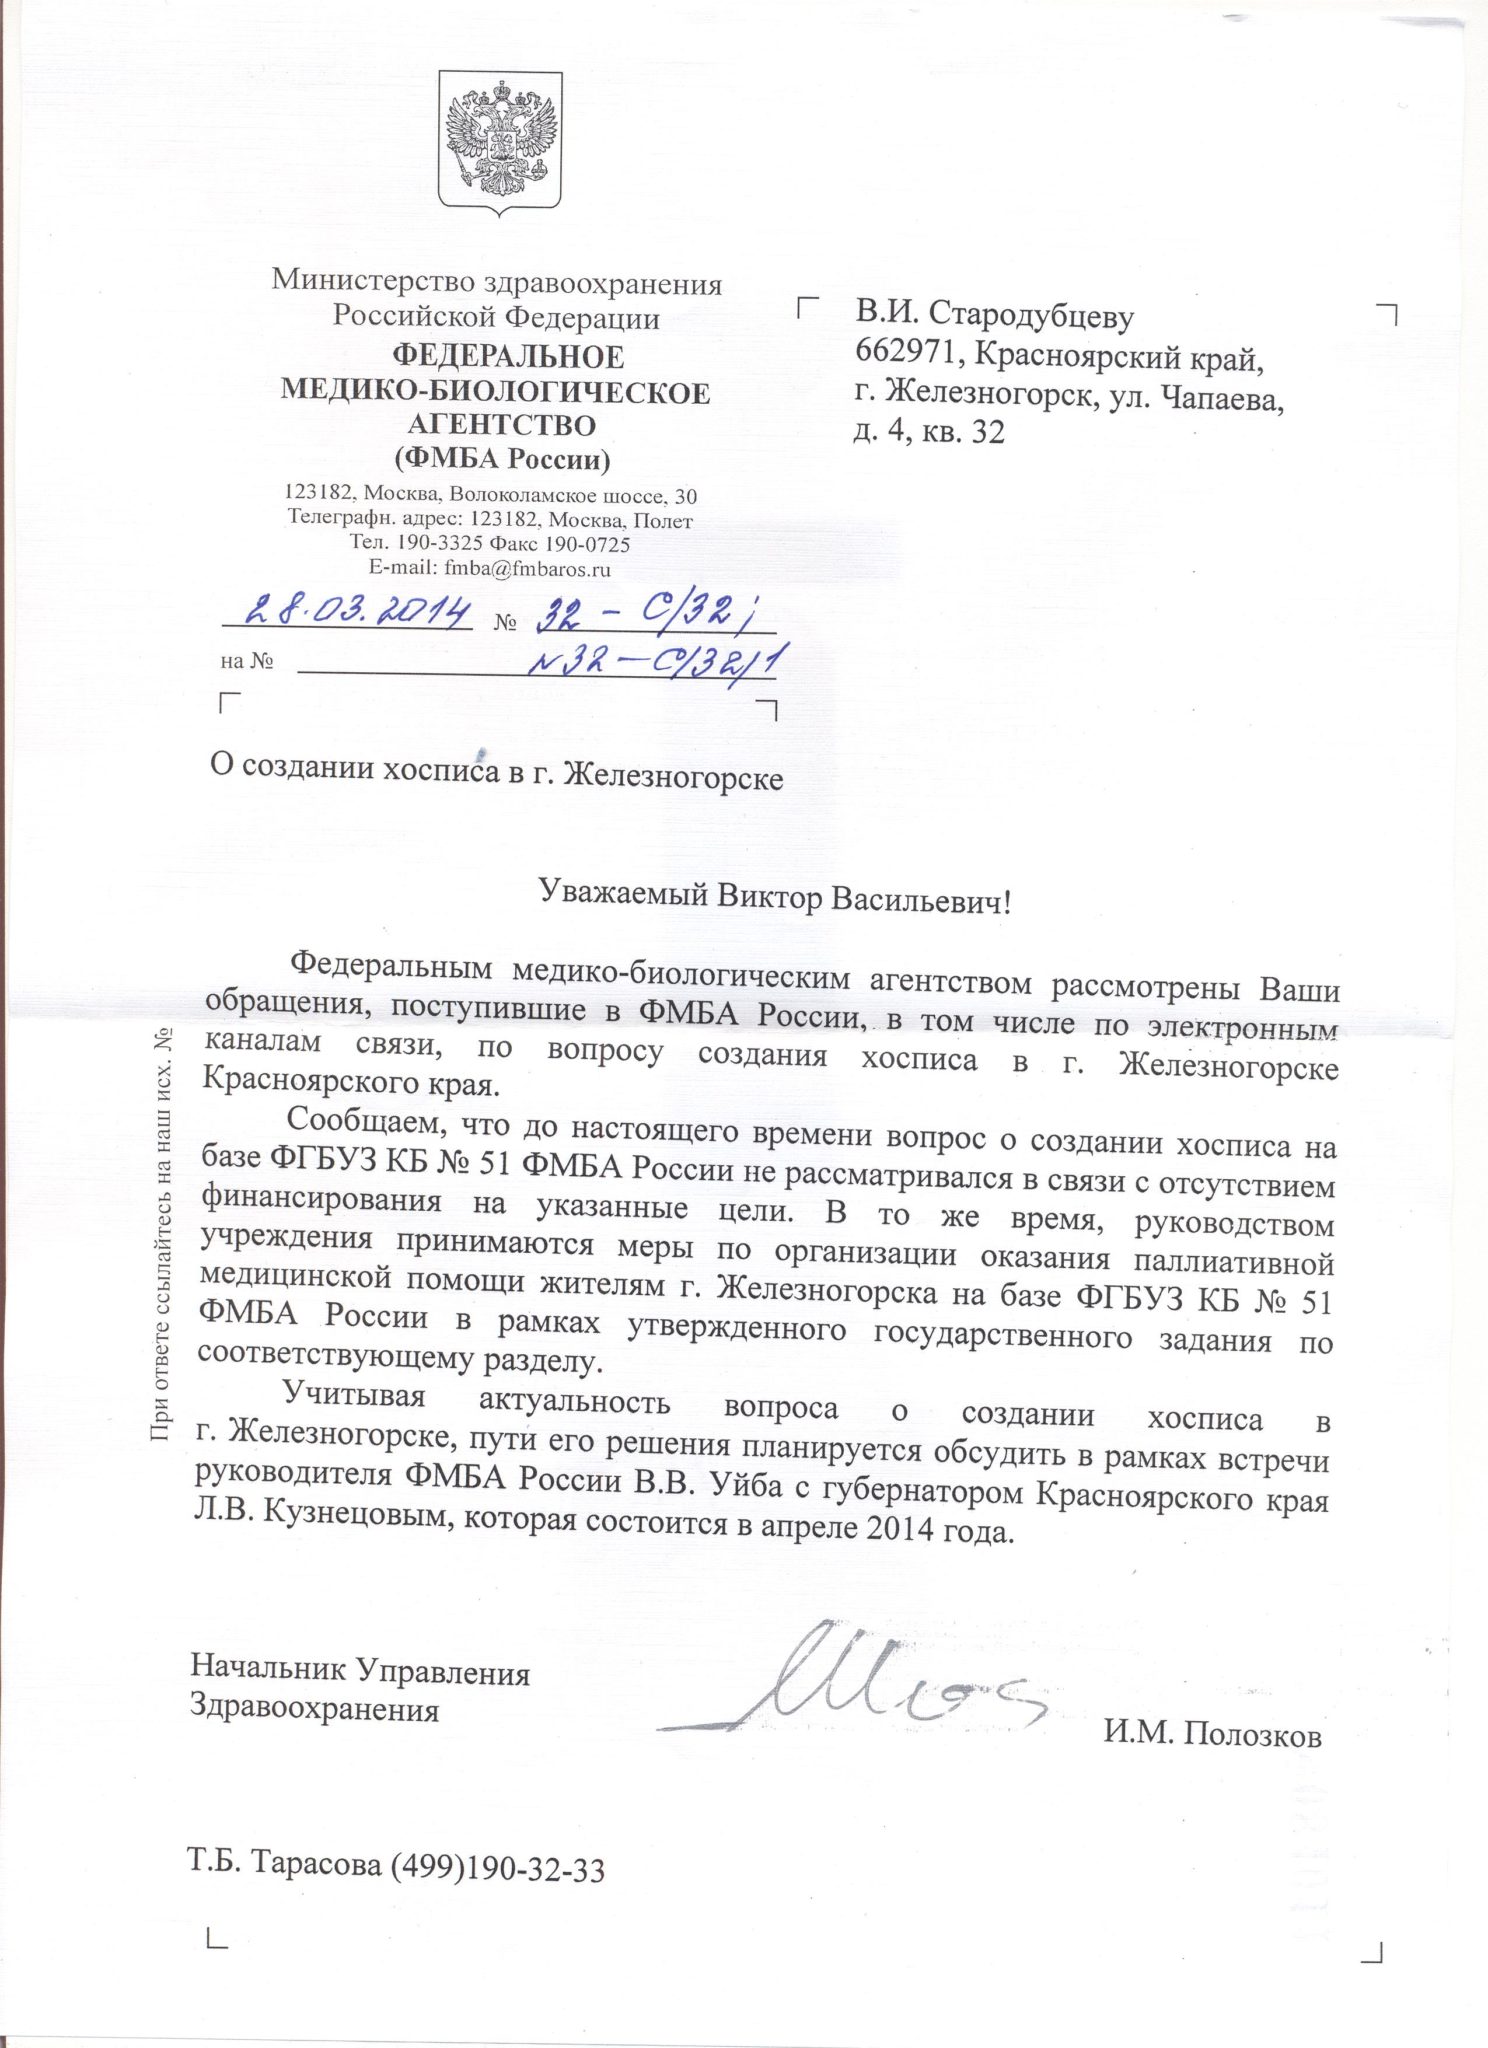 Руководитель ФМБА России Уйба Владимир Викторович ответил на обращение. Официальный ответ ФМБА.